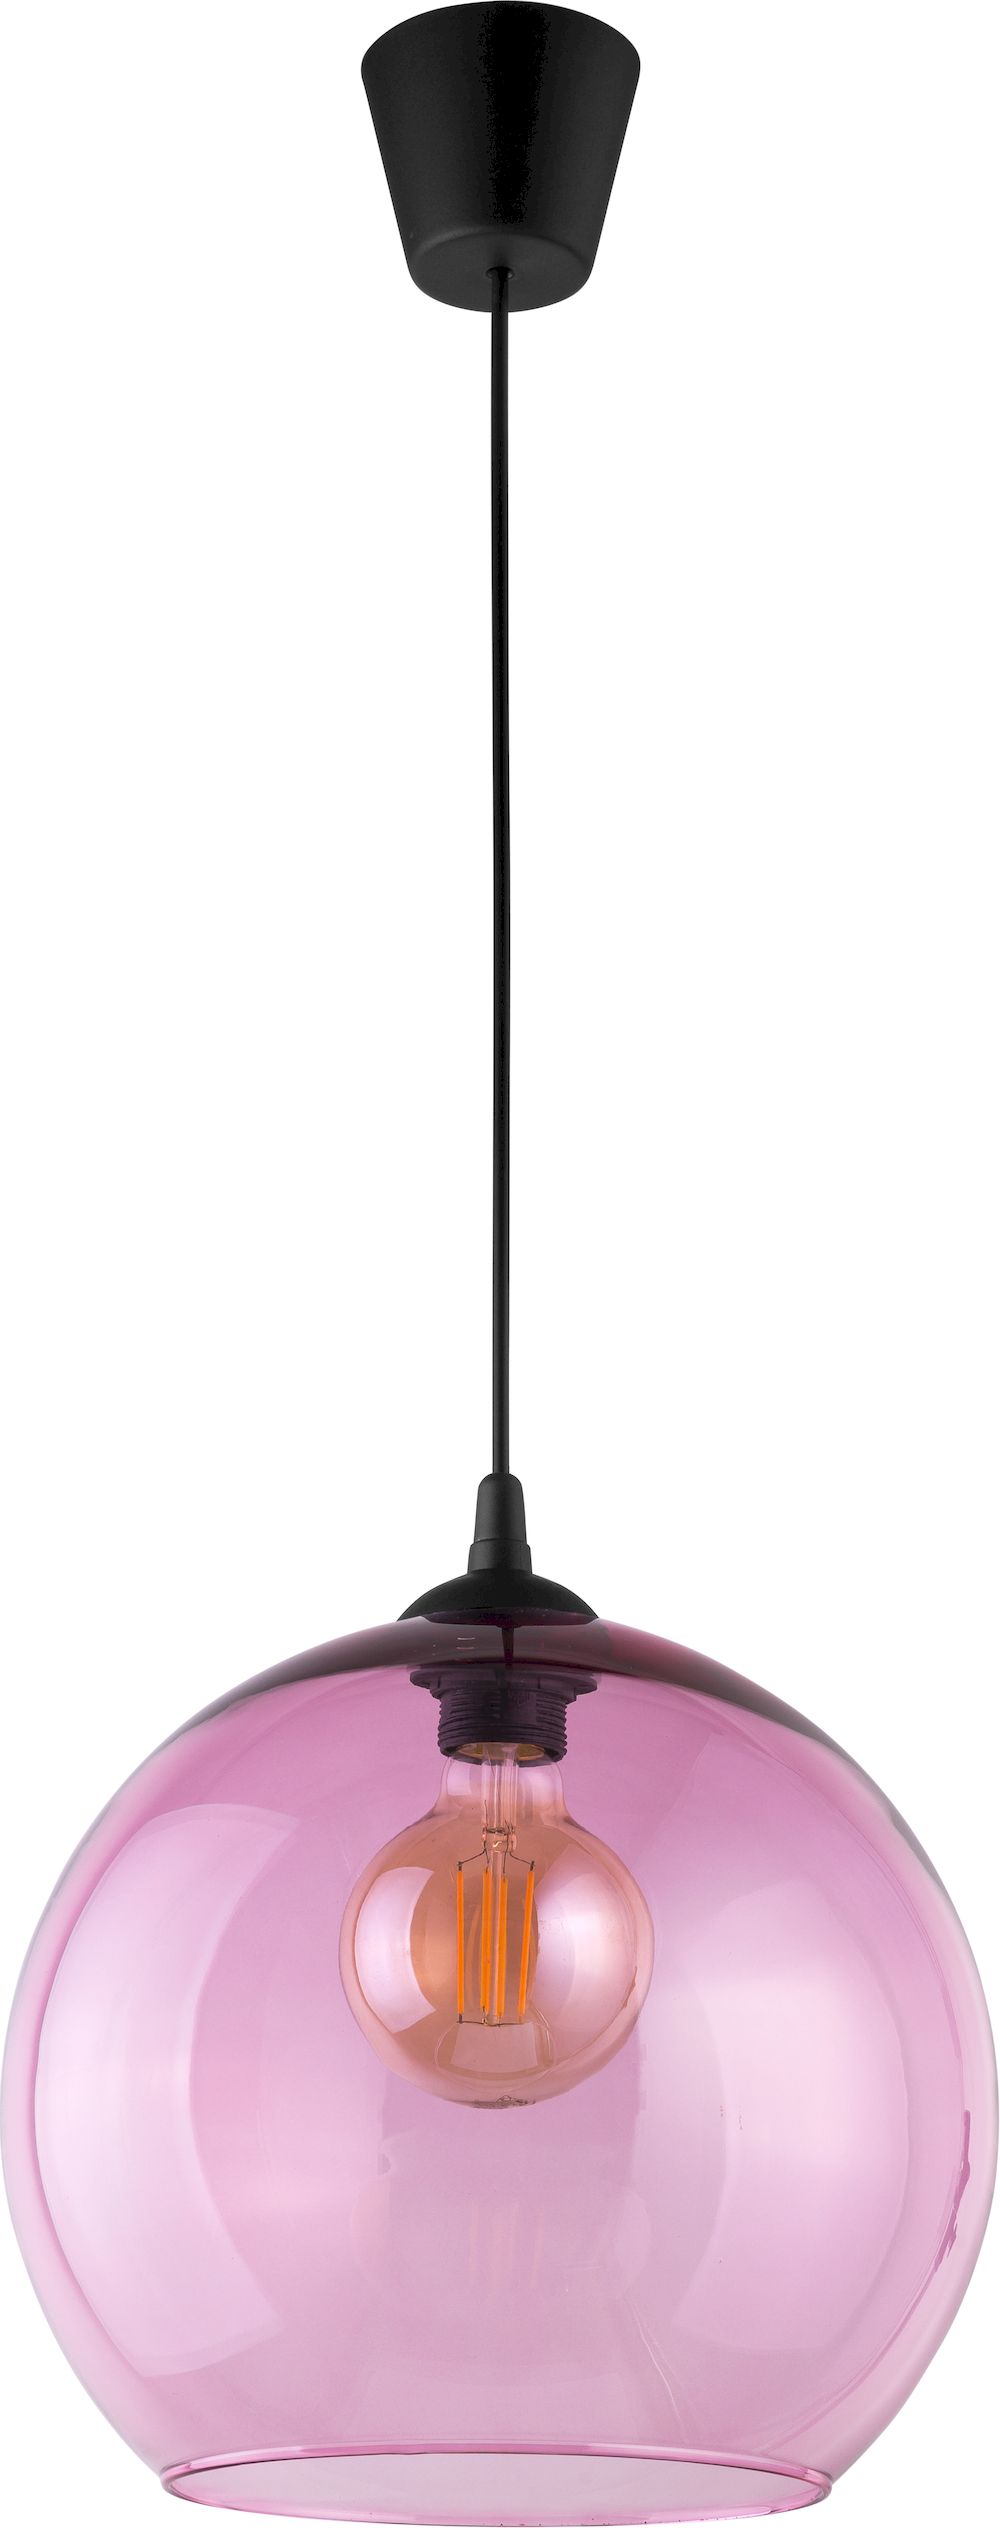 TK Cubus taklampa - rosa glas och svart metall